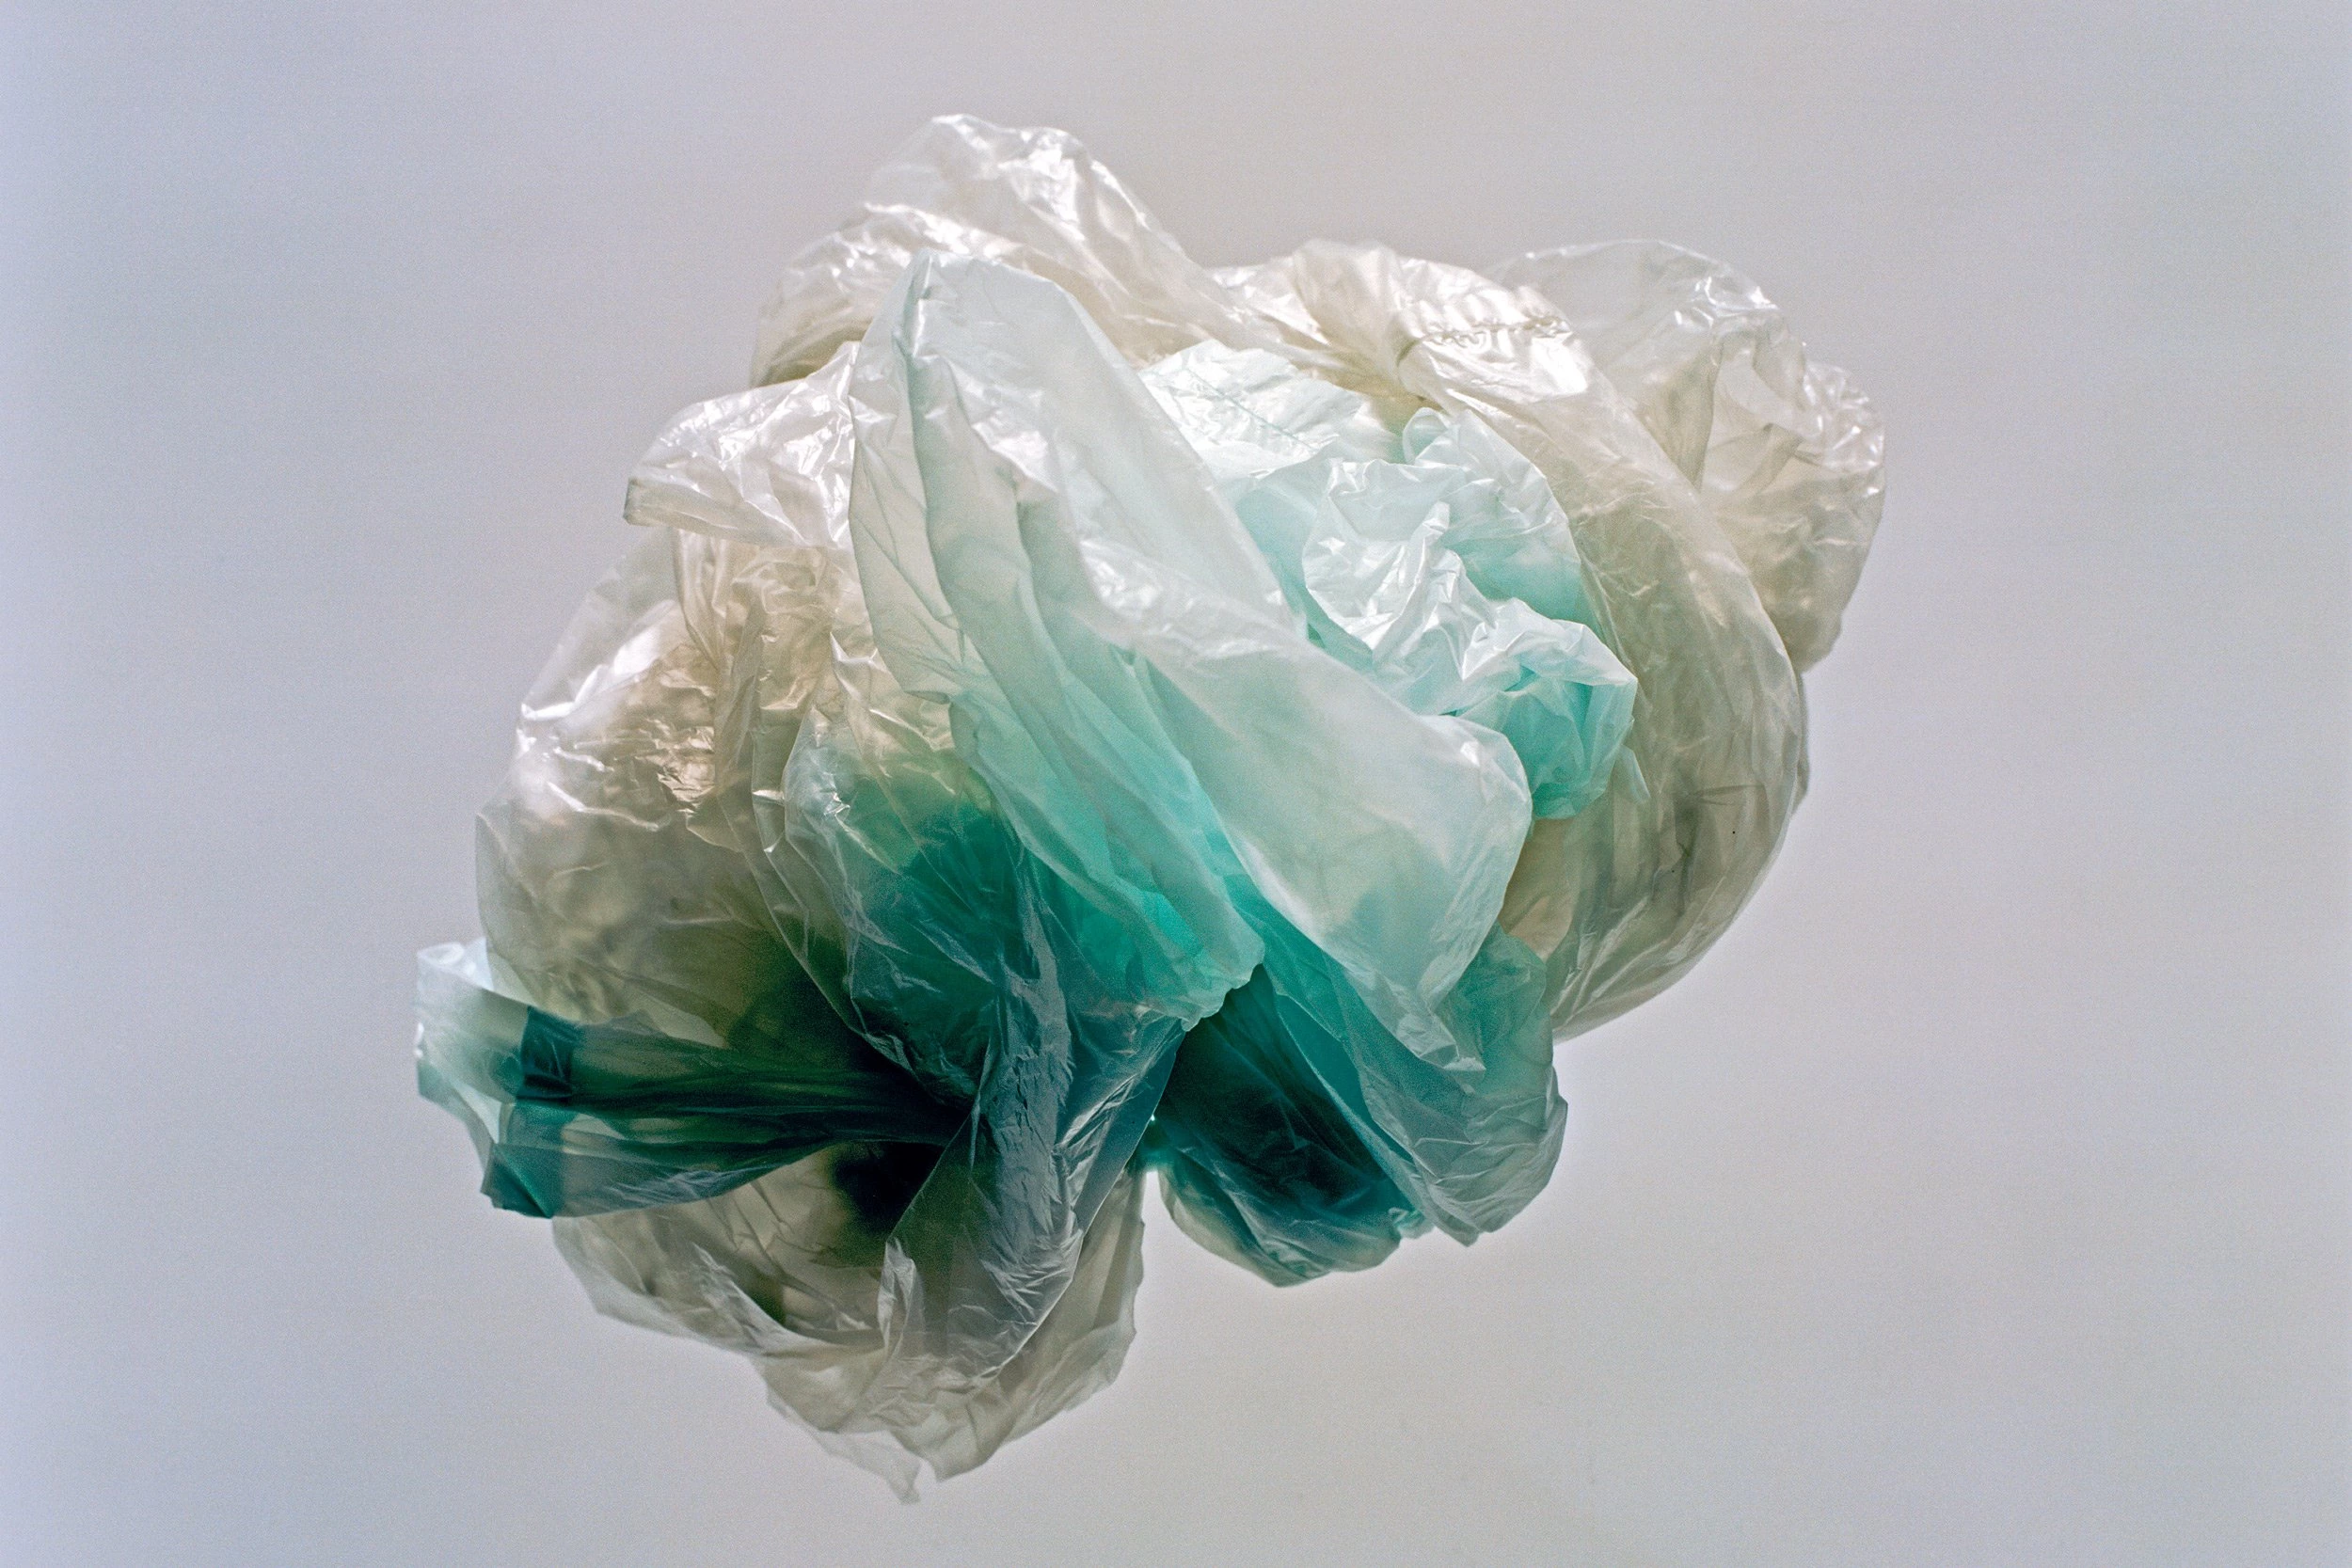 Enquanto apenas oito estados decretaram restrições ao plástico, mais de 330 decretos locais sobre o uso de sacolas plásticas foram aprovadas em 24 estados.